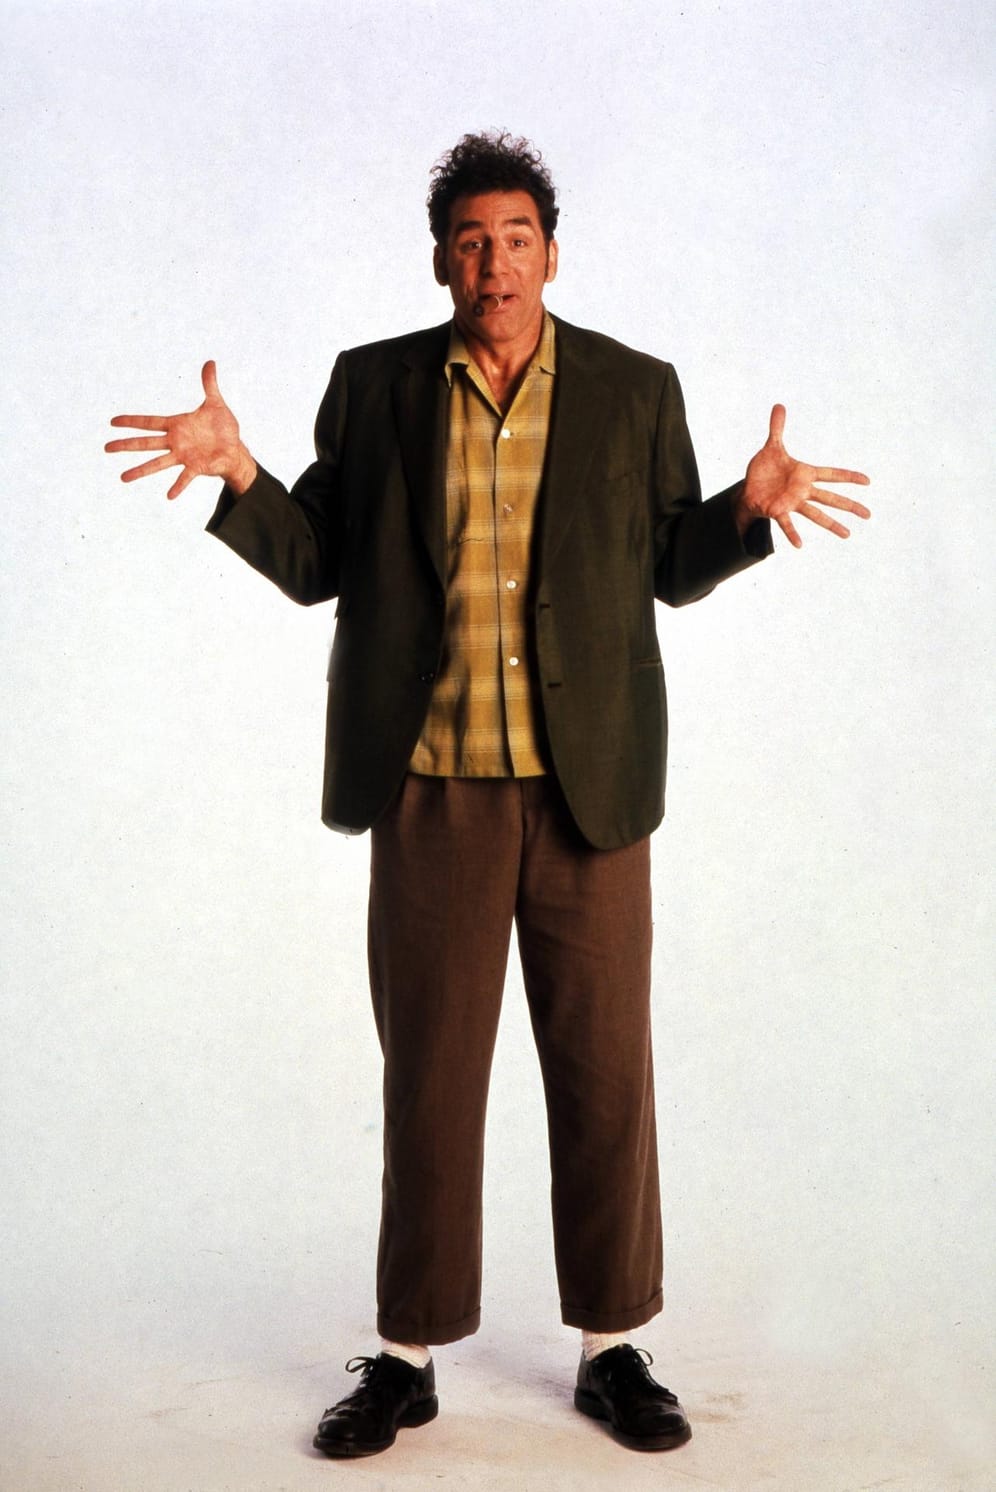 Michael Richards spielte in "Seinfeld" Jerrys exzentrischen Nachbarn Cosmo Kramer.